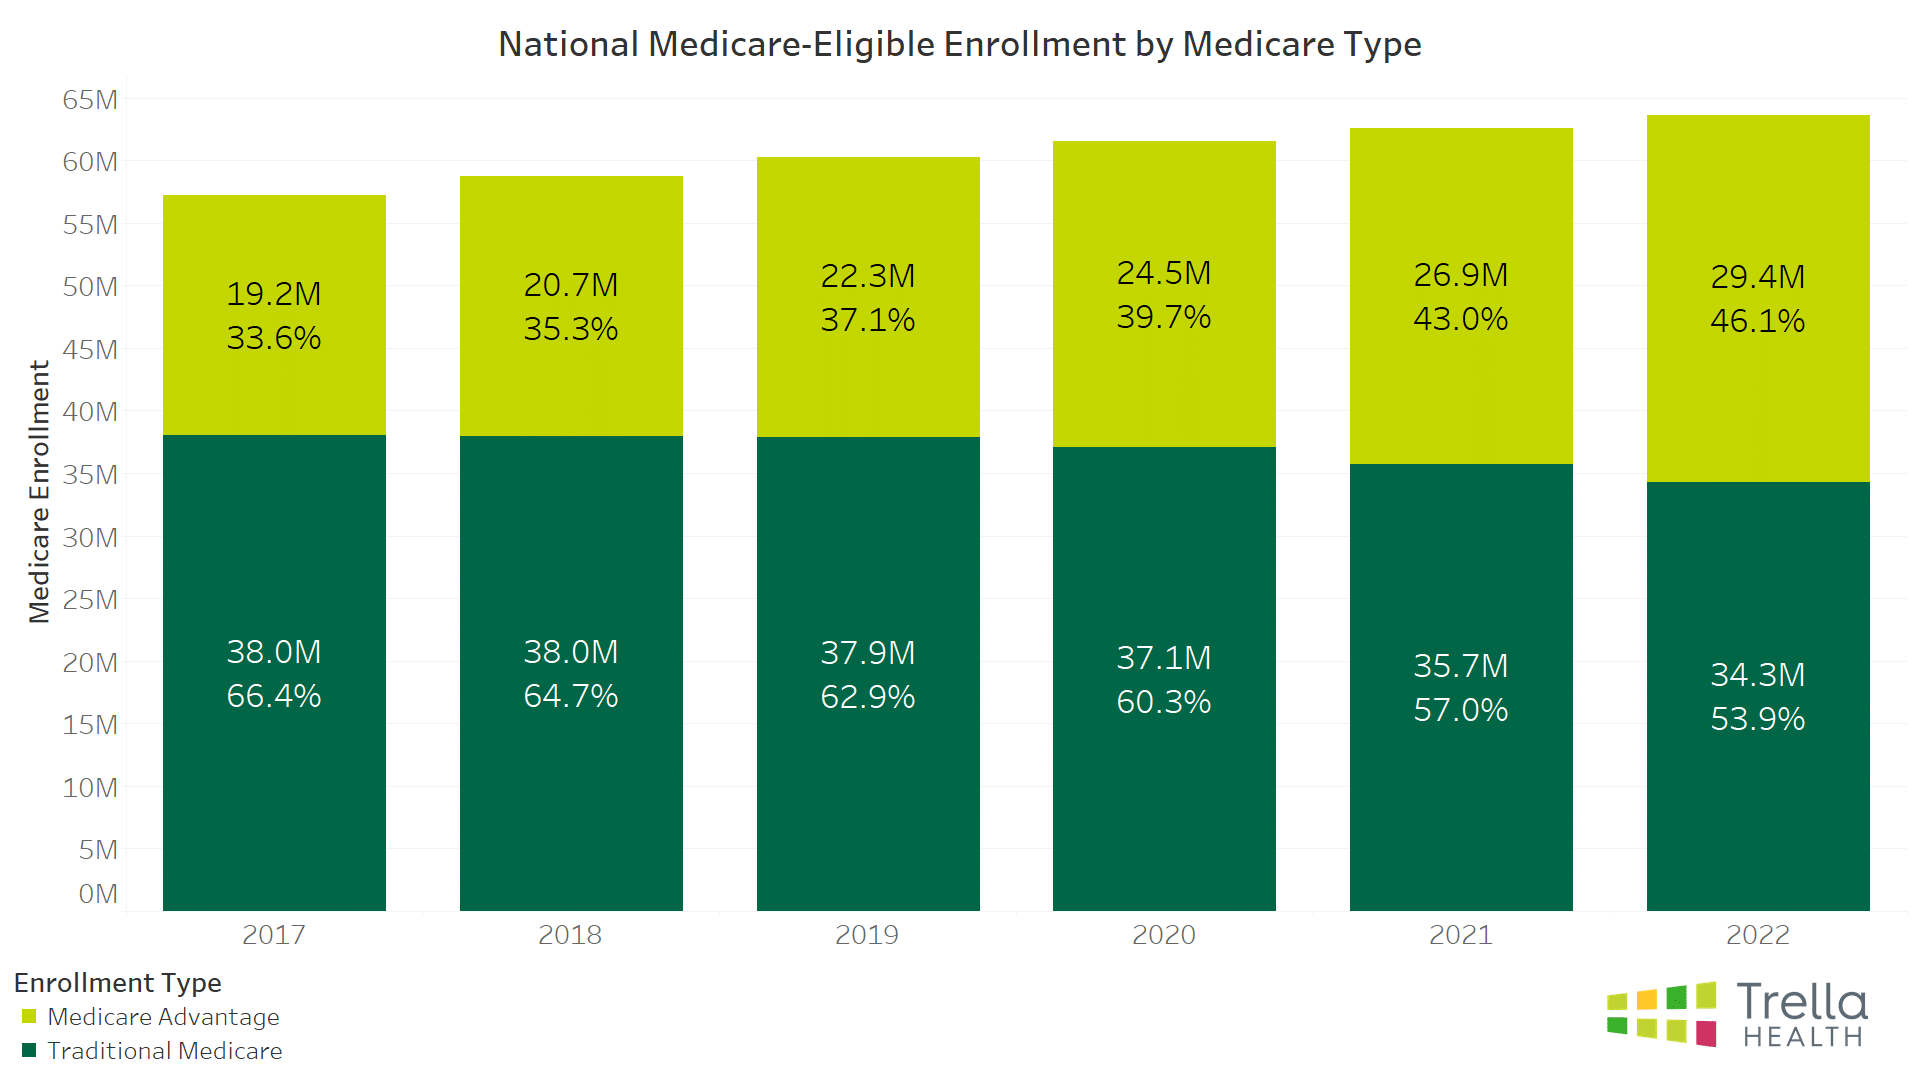 National Medicare-Eligible Enrollment